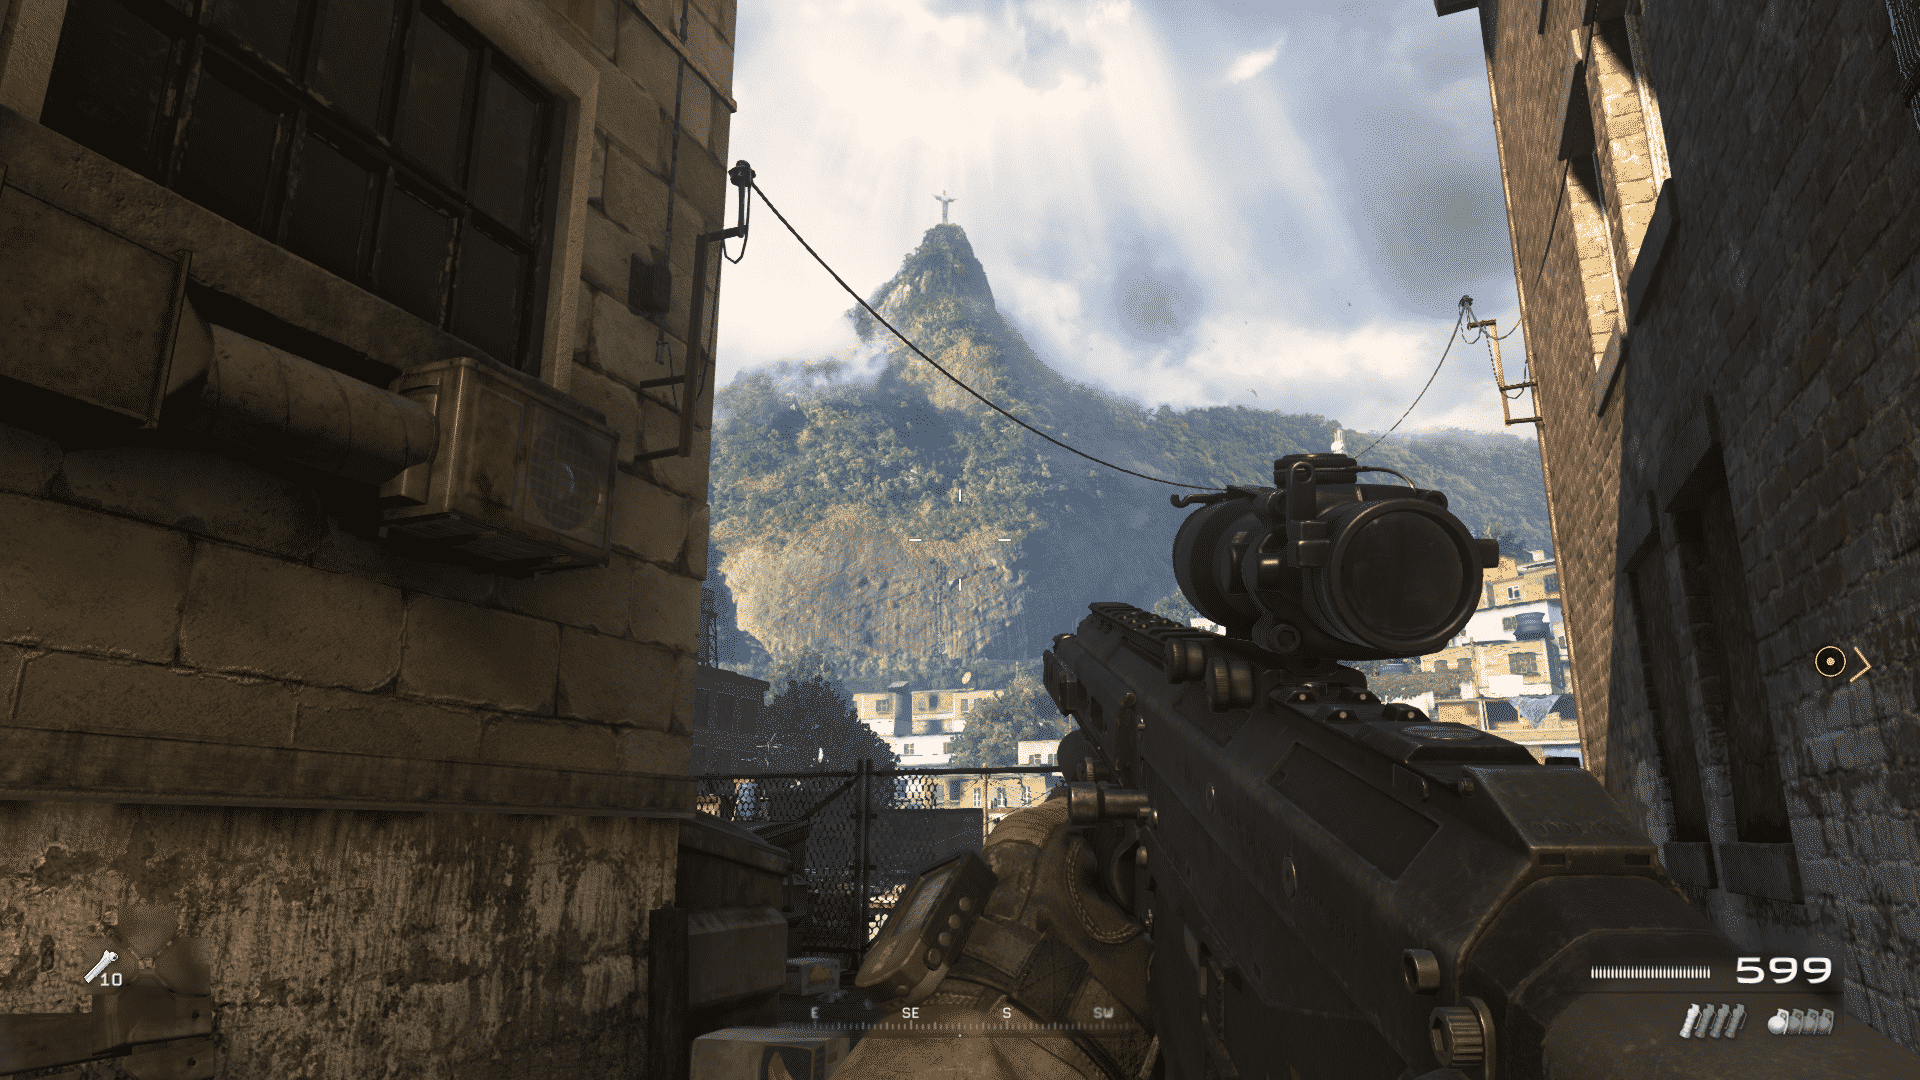 Call of Duty Modern Warfare 3 tem data de lançamento revelada